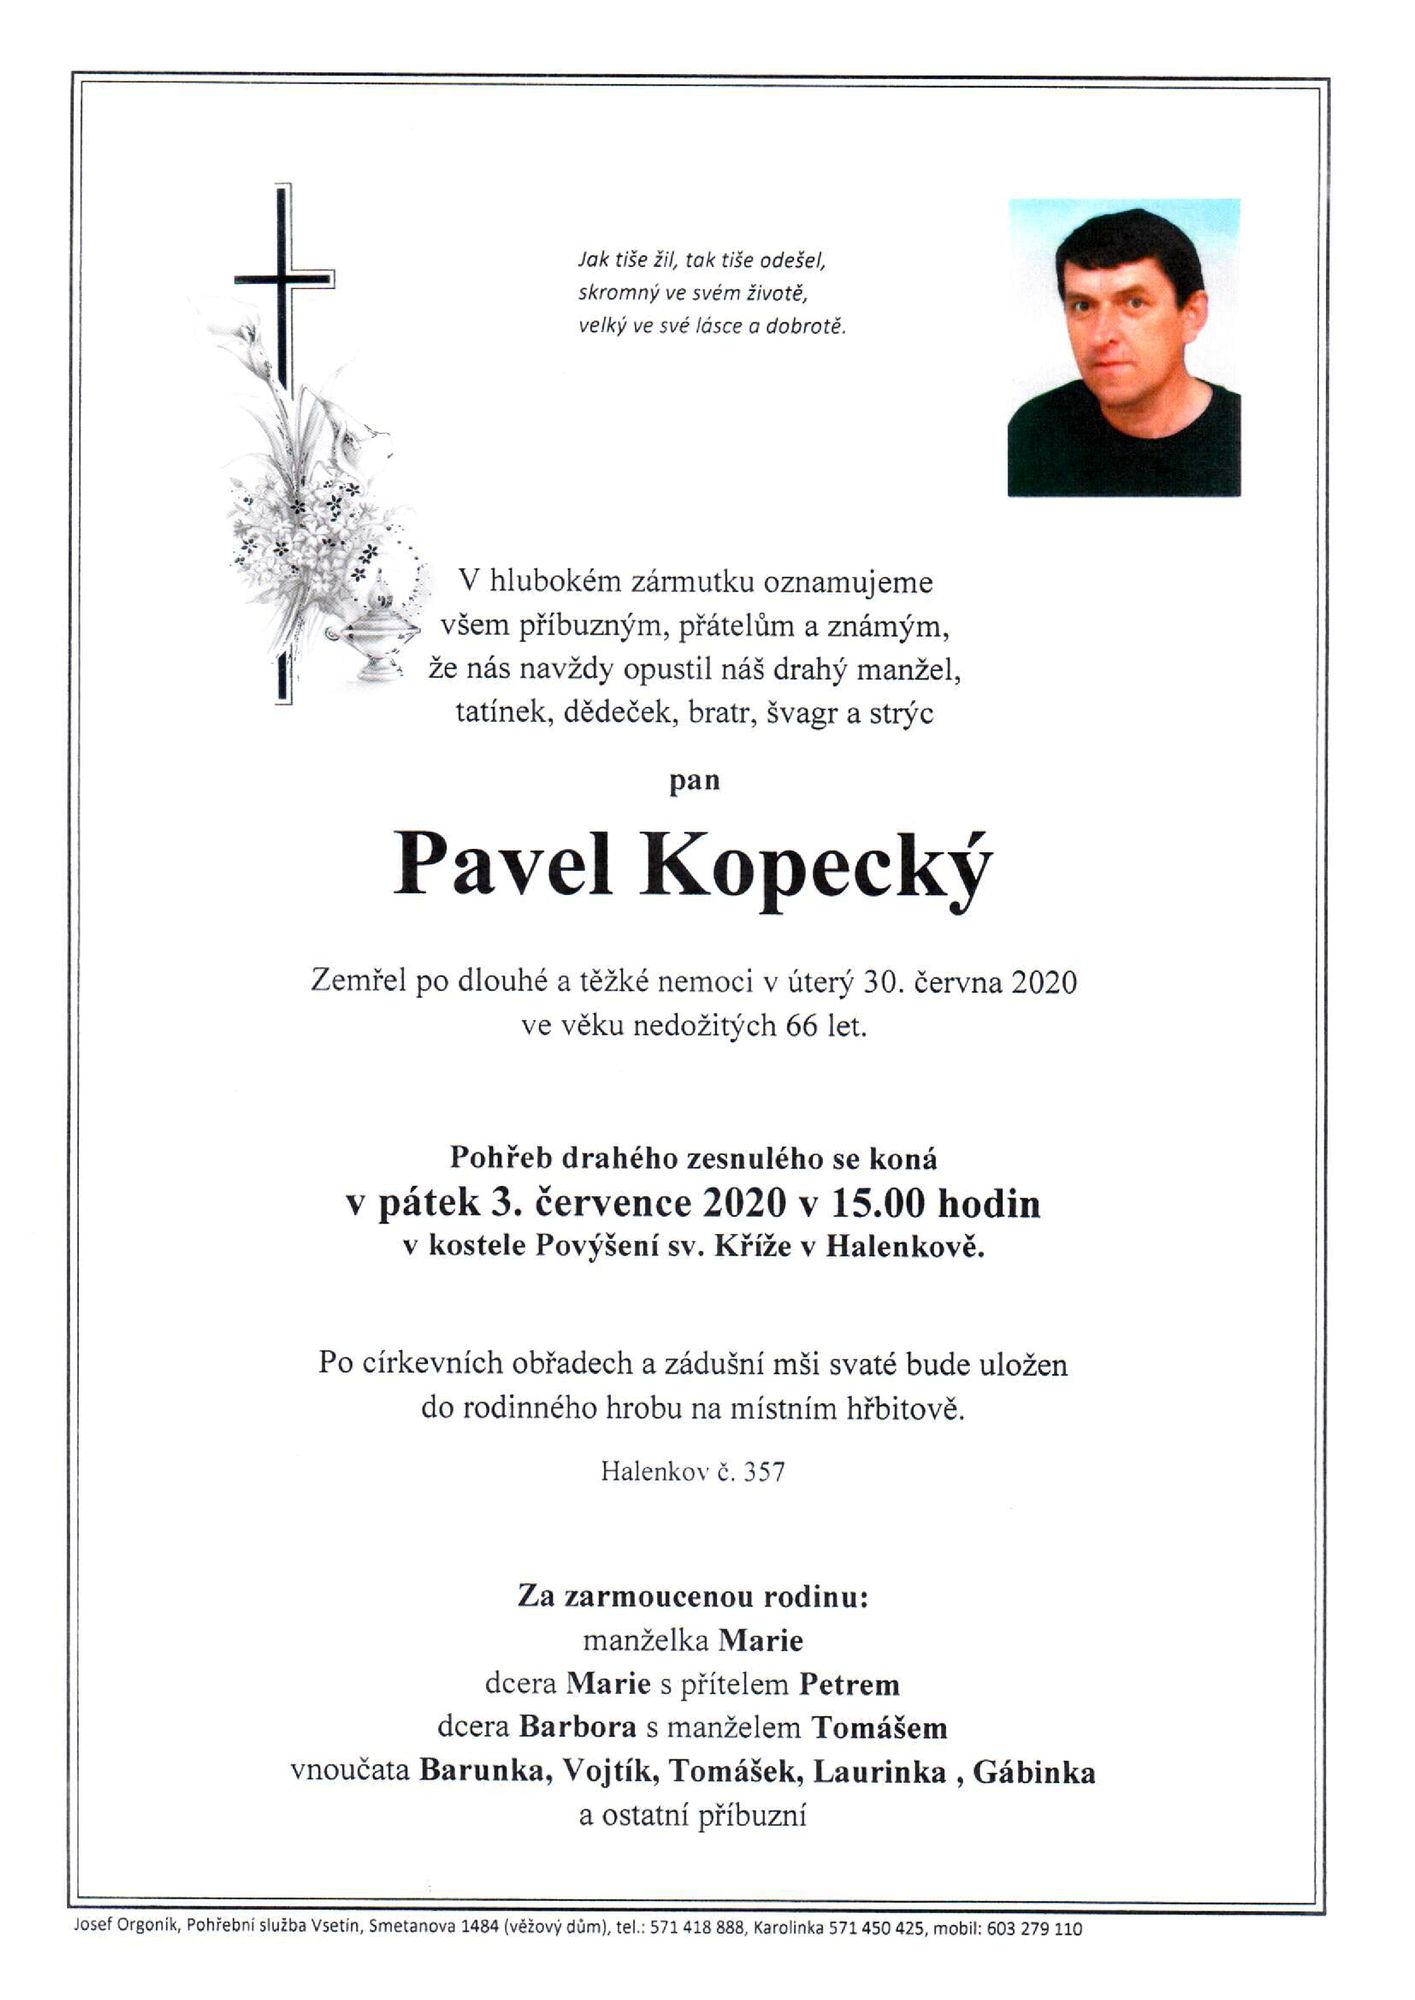 Pavel Kopecký